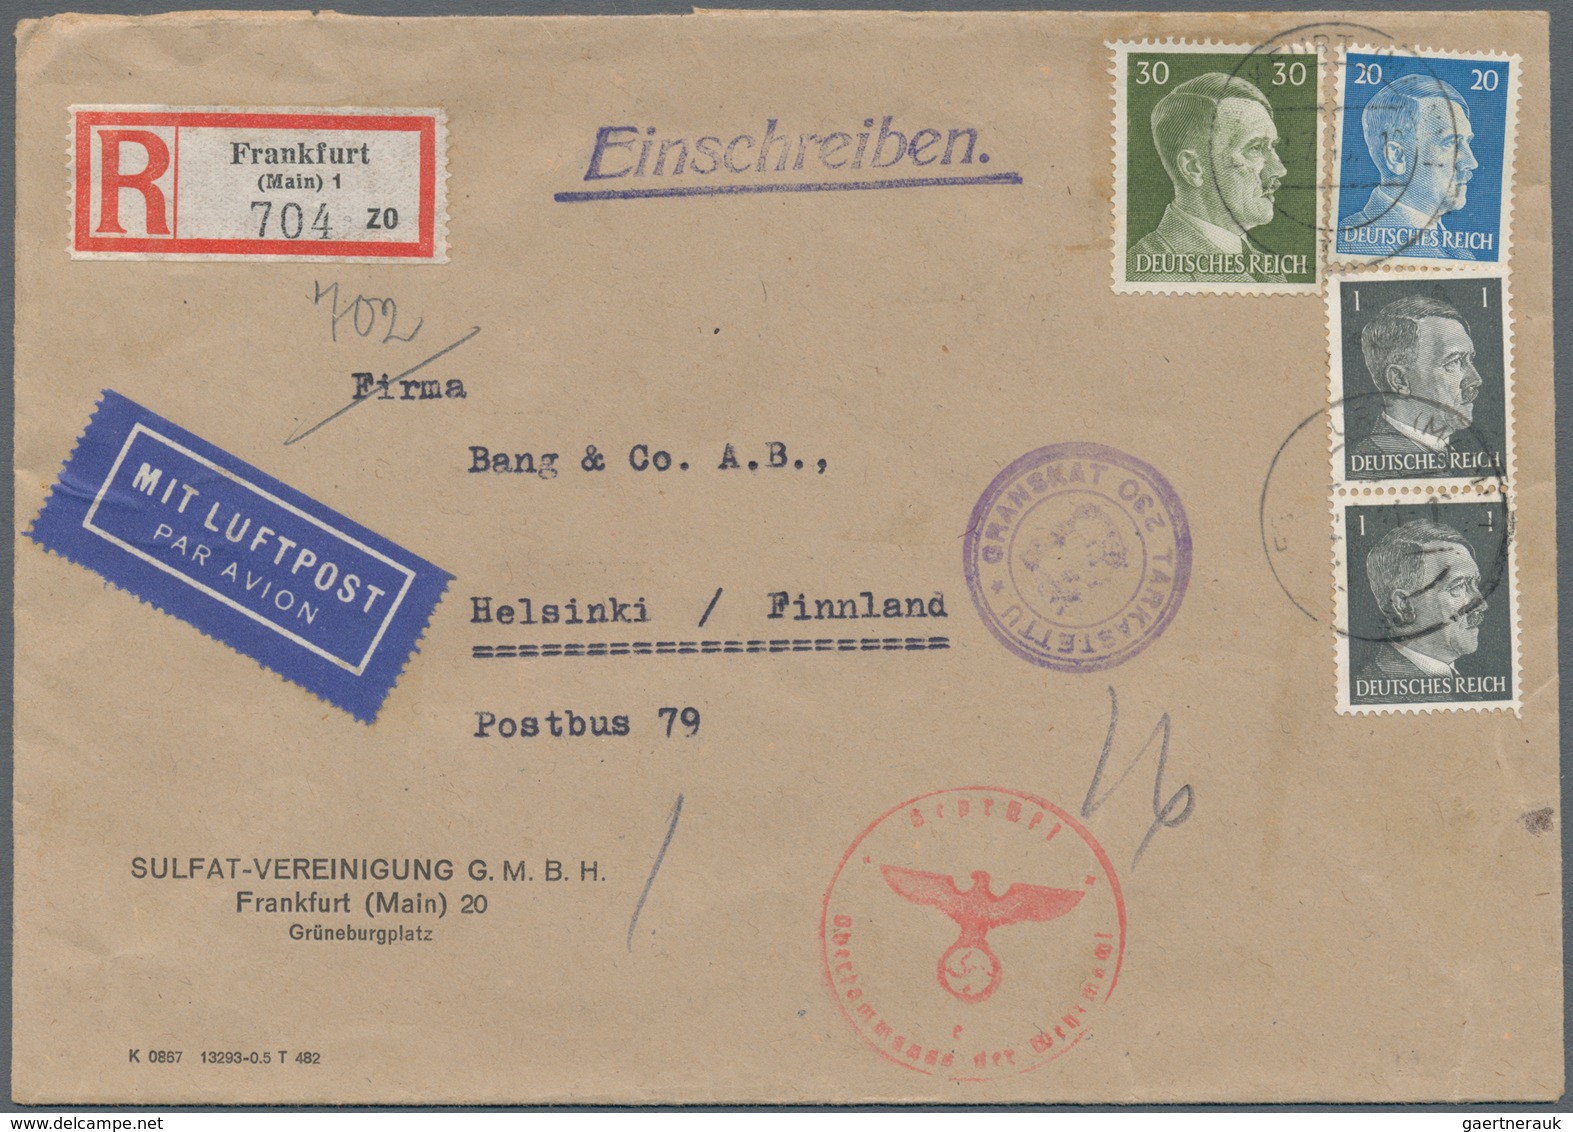 Deutschland: 1856/1944, kleine Spezialsammlung von ca. 40 Bedarfsbelegen mit besonderen Portostufen,